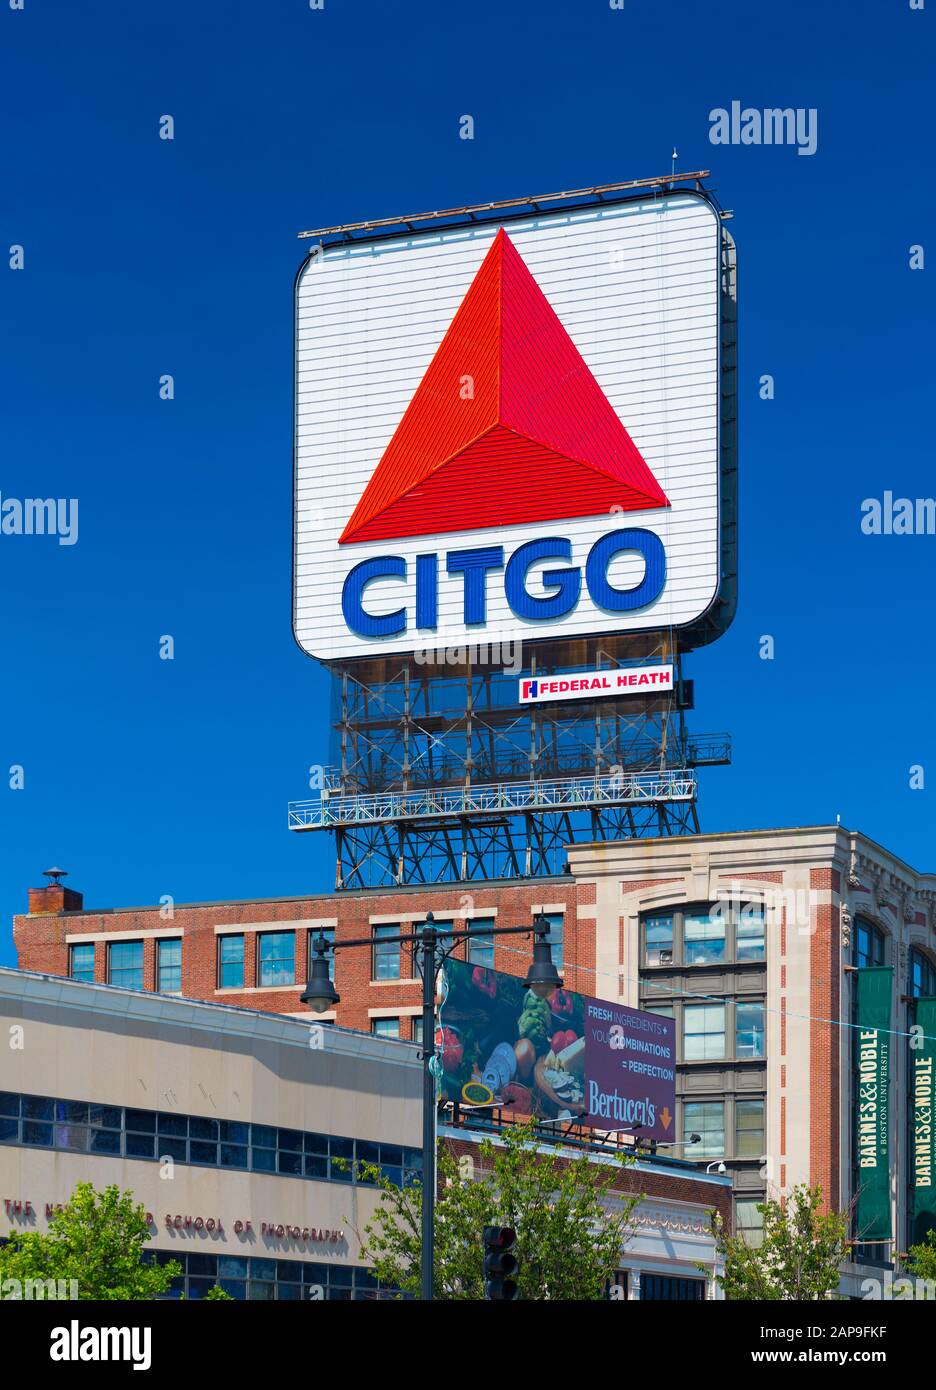 Boston, ma - Luglio 2016, USA: Grande cartellone con il logo di Citgo, azienda produttrice di benzina e carburante (Fenway Park, Kenmore Square) Foto Stock